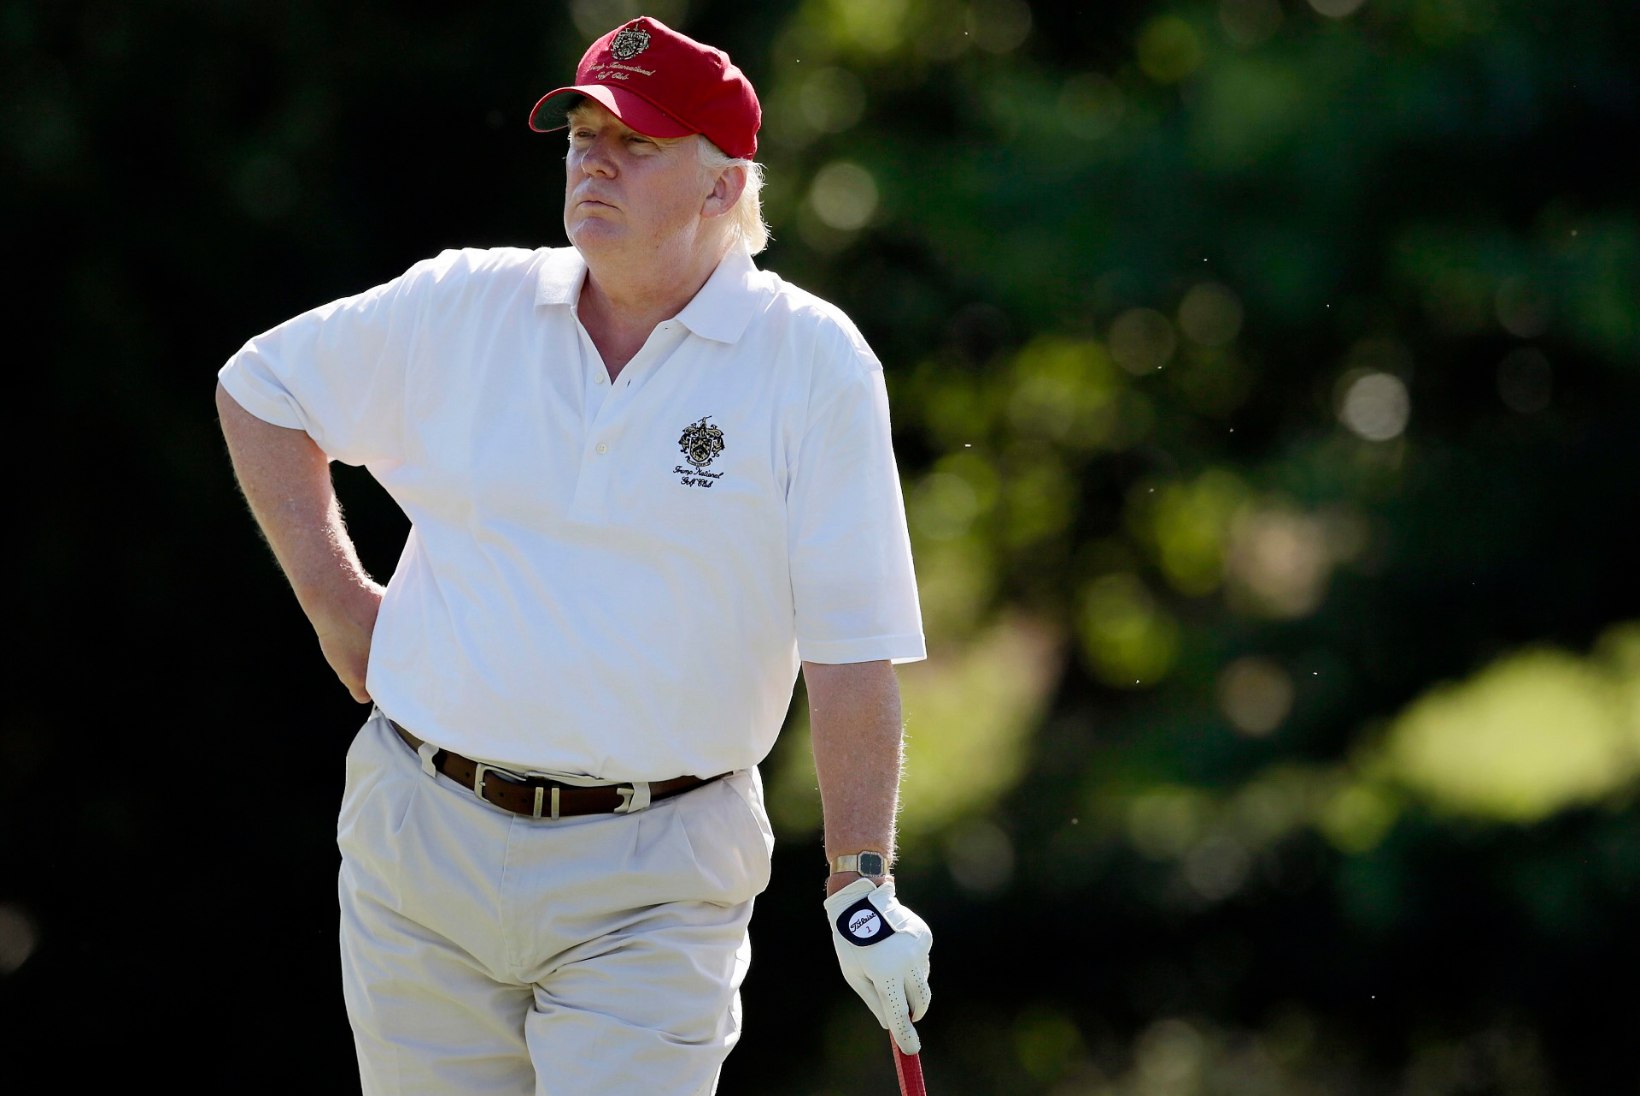 Trump võib Inglismaale kauemaks jääda, kuna tahab seal ka golfi mängida